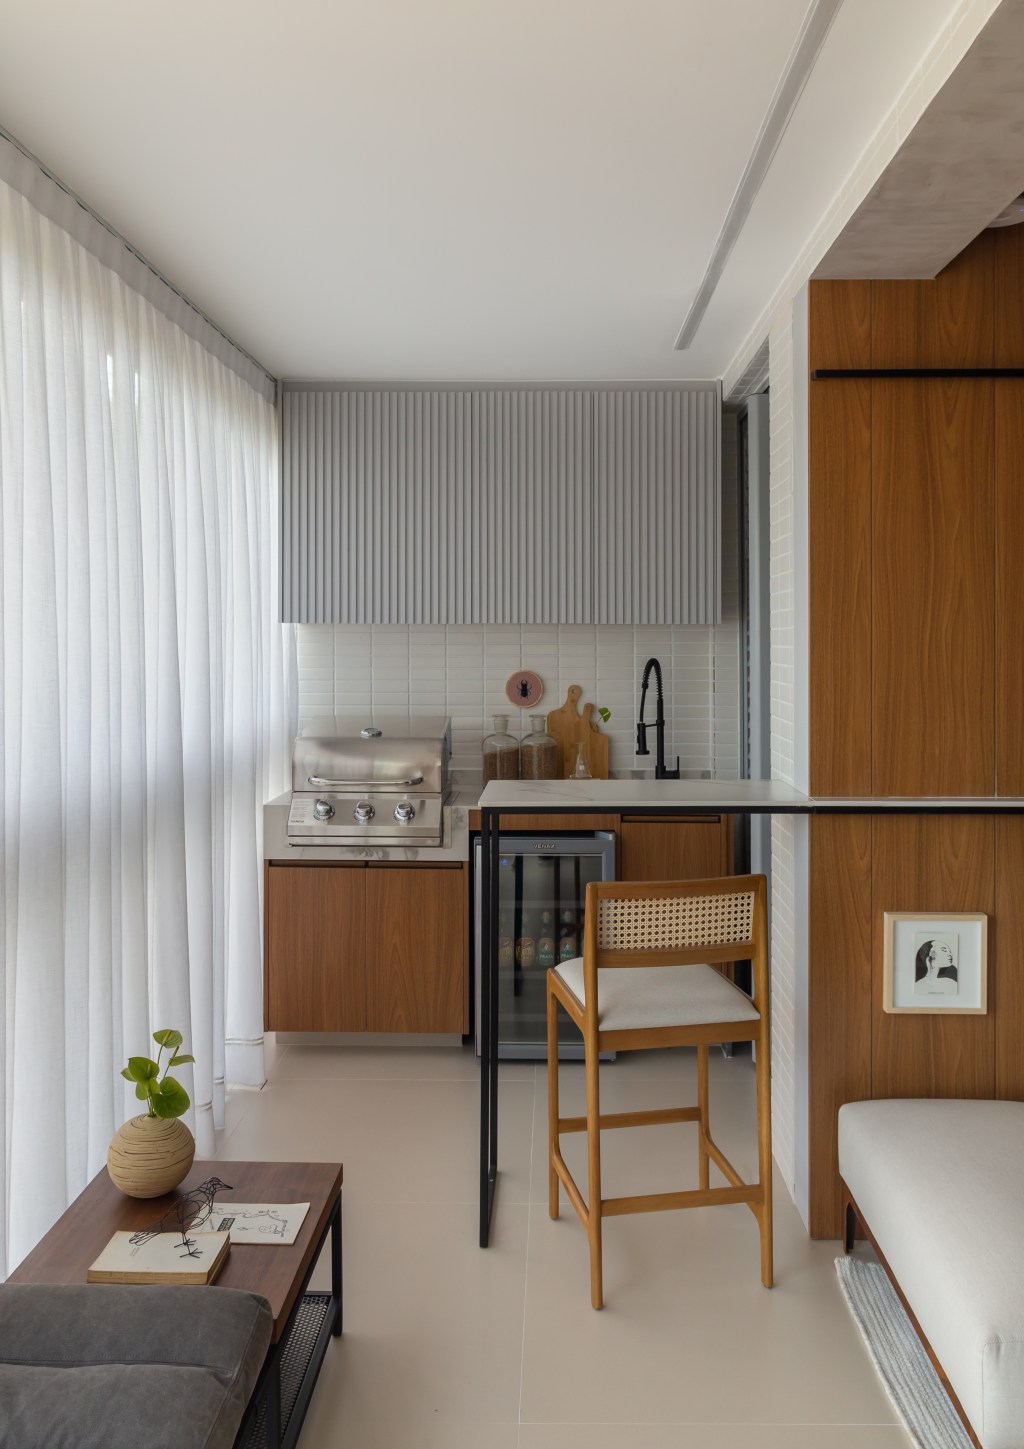 Apê de 100 m2 prático décor contemporâneo toques industriais arquiteto Rafael Ramos sala estar varanda banco aparador bancada churrasqueira cozinha cortina